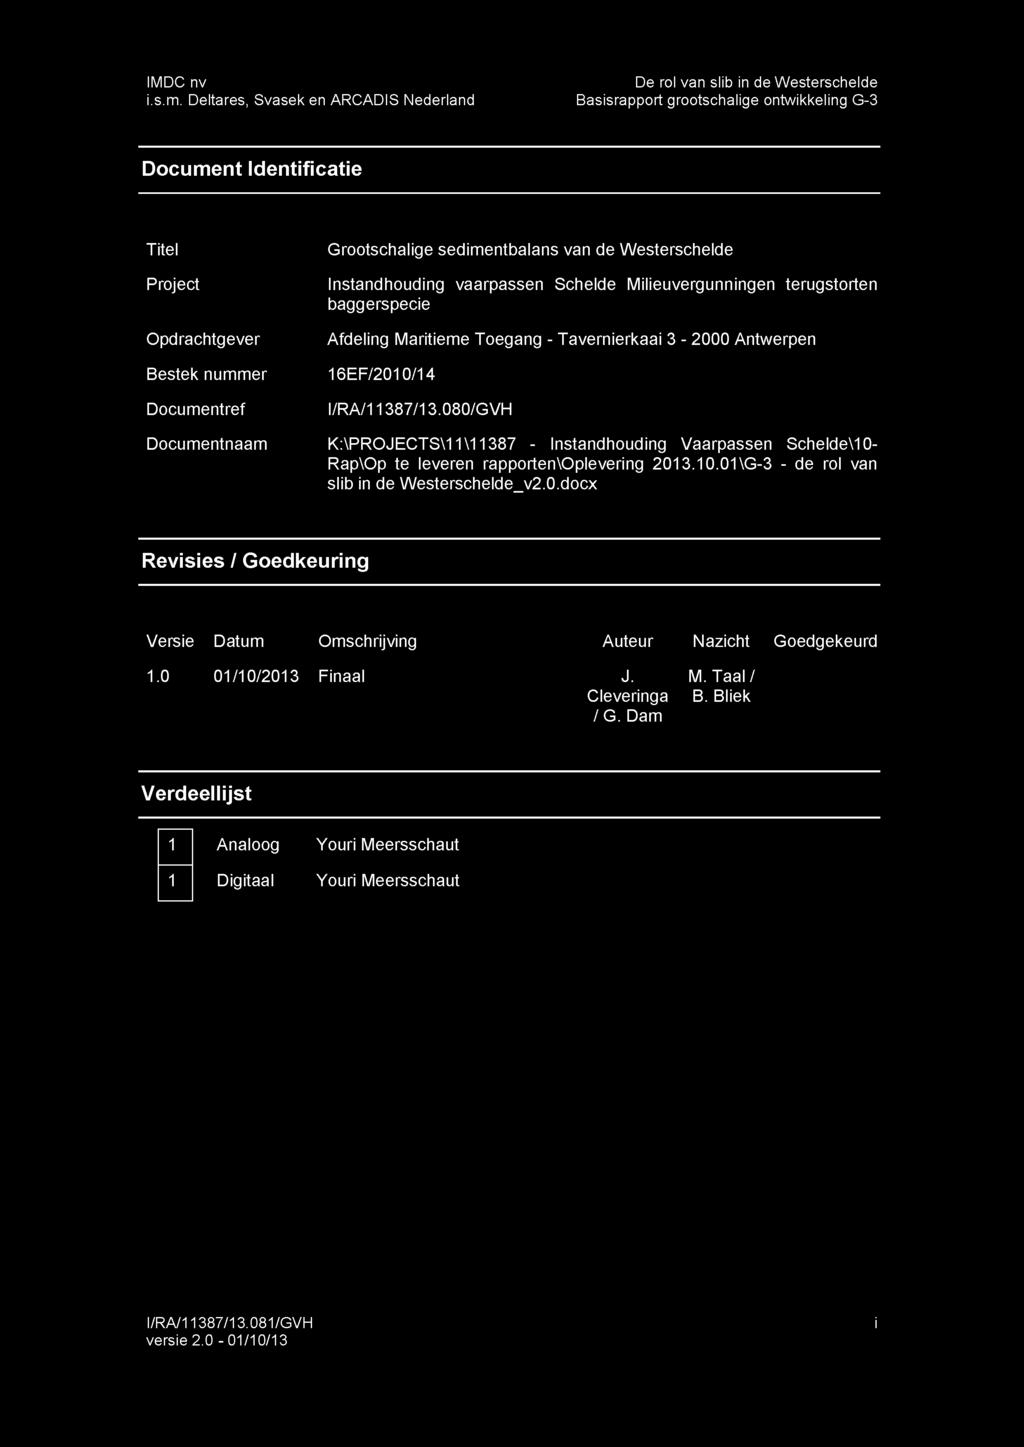 sedimentbalans van de Westerschelde Instandhouding vaarpassen Schelde Milieuvergunningen terugstorten baggerspecie Afdeling Maritieme Toegang - Tavernierkaai 3-2000 Antwerpen 16EF/2010/14